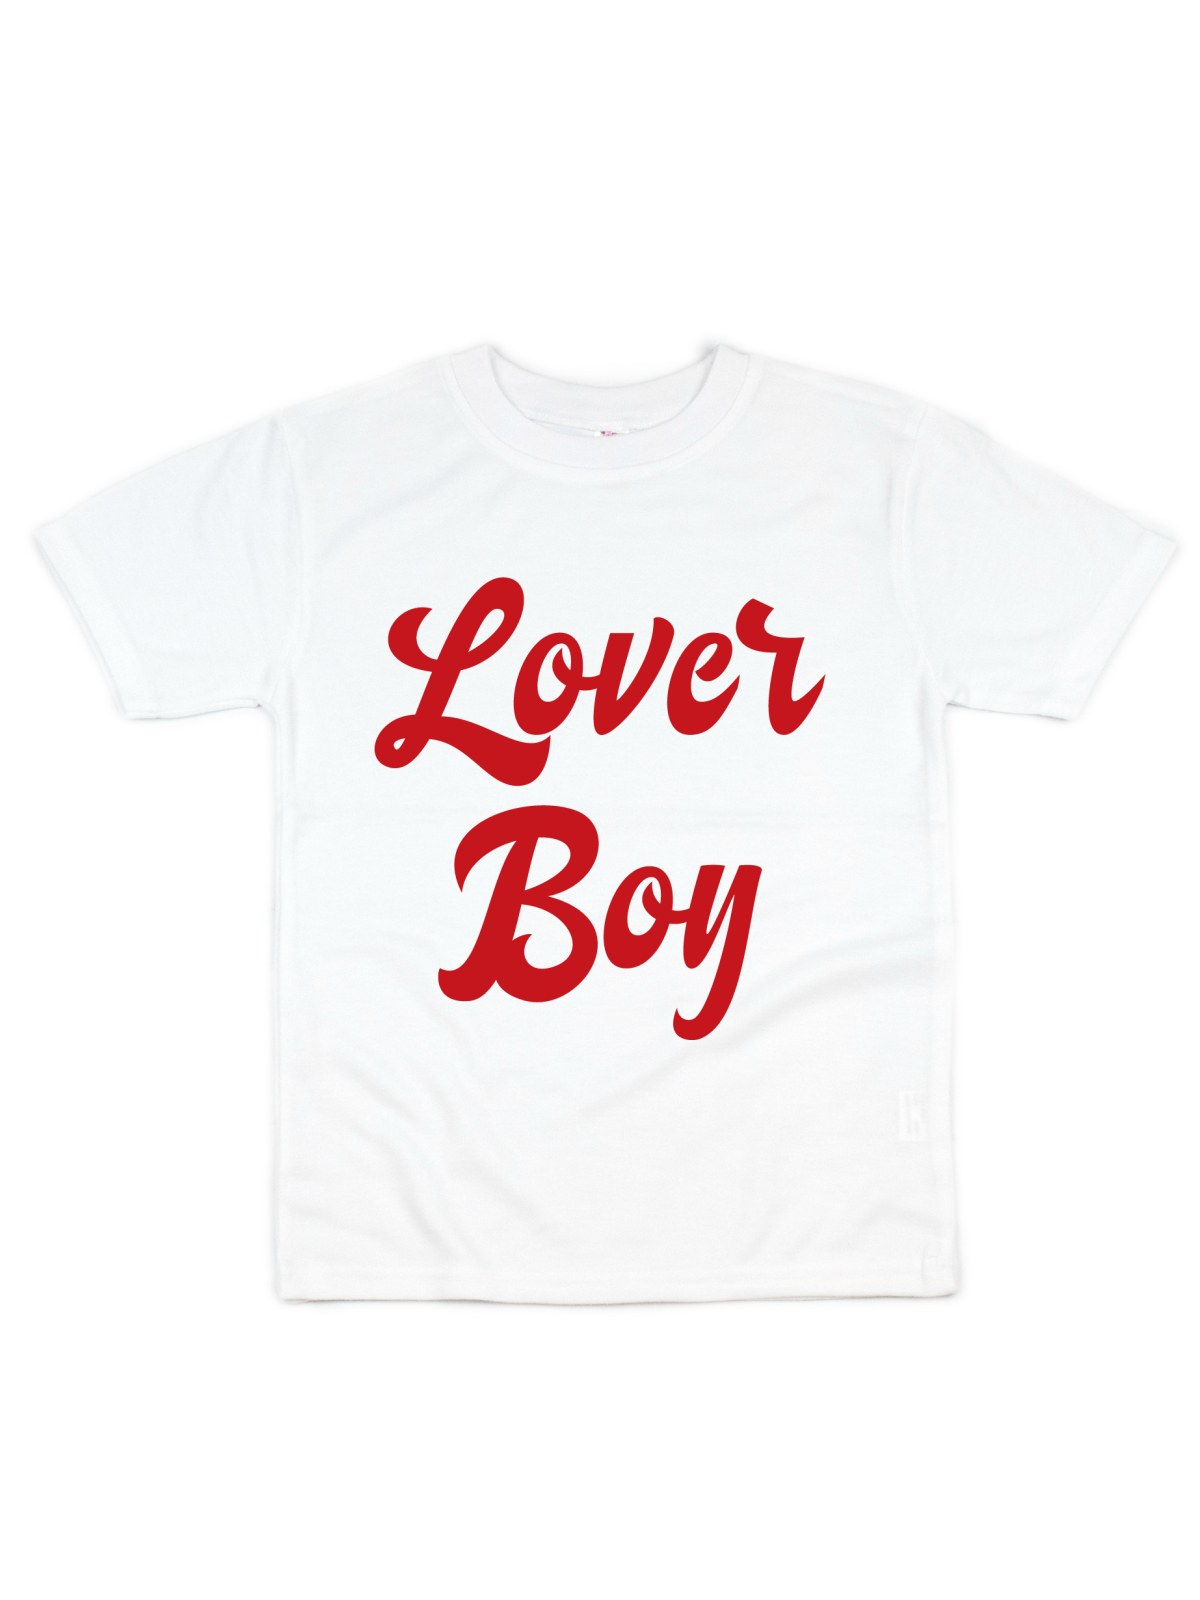 Lover Boy Kids Valentine's Day Shirt in Red